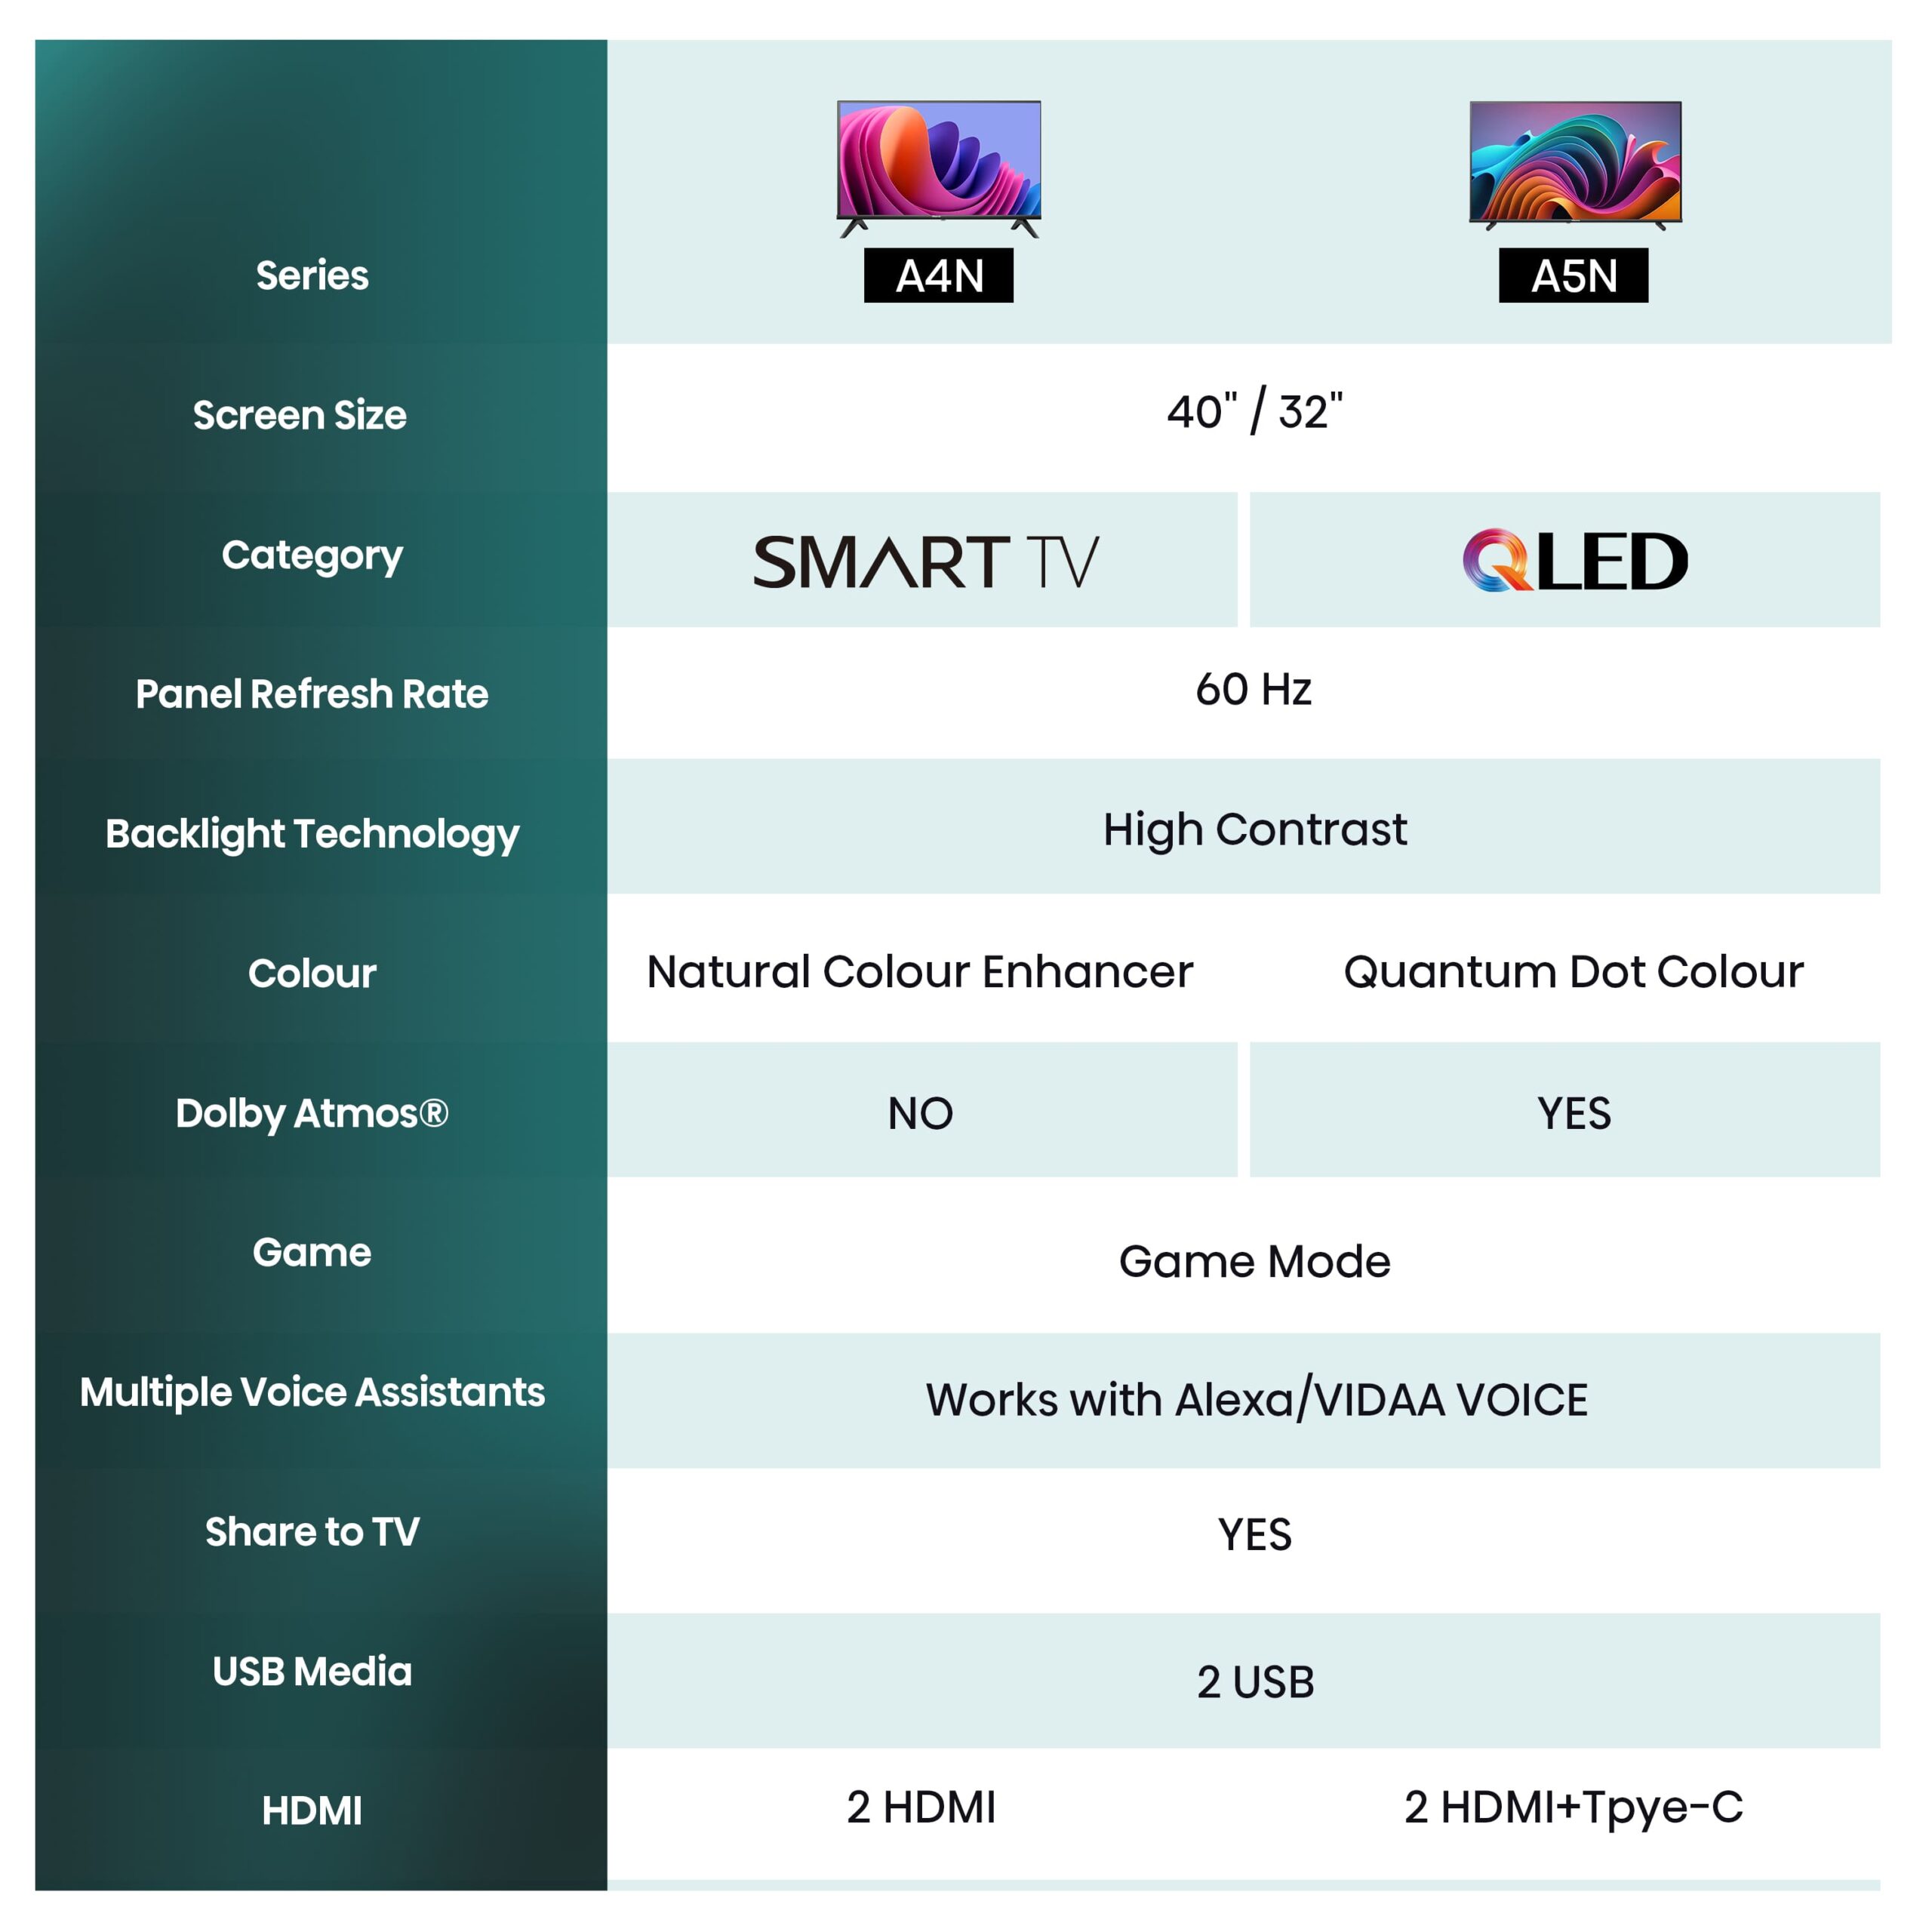 Hisense - Smart TV HD 32A4N 32 polegadas, TV com Modo Jogo, DVB-T2